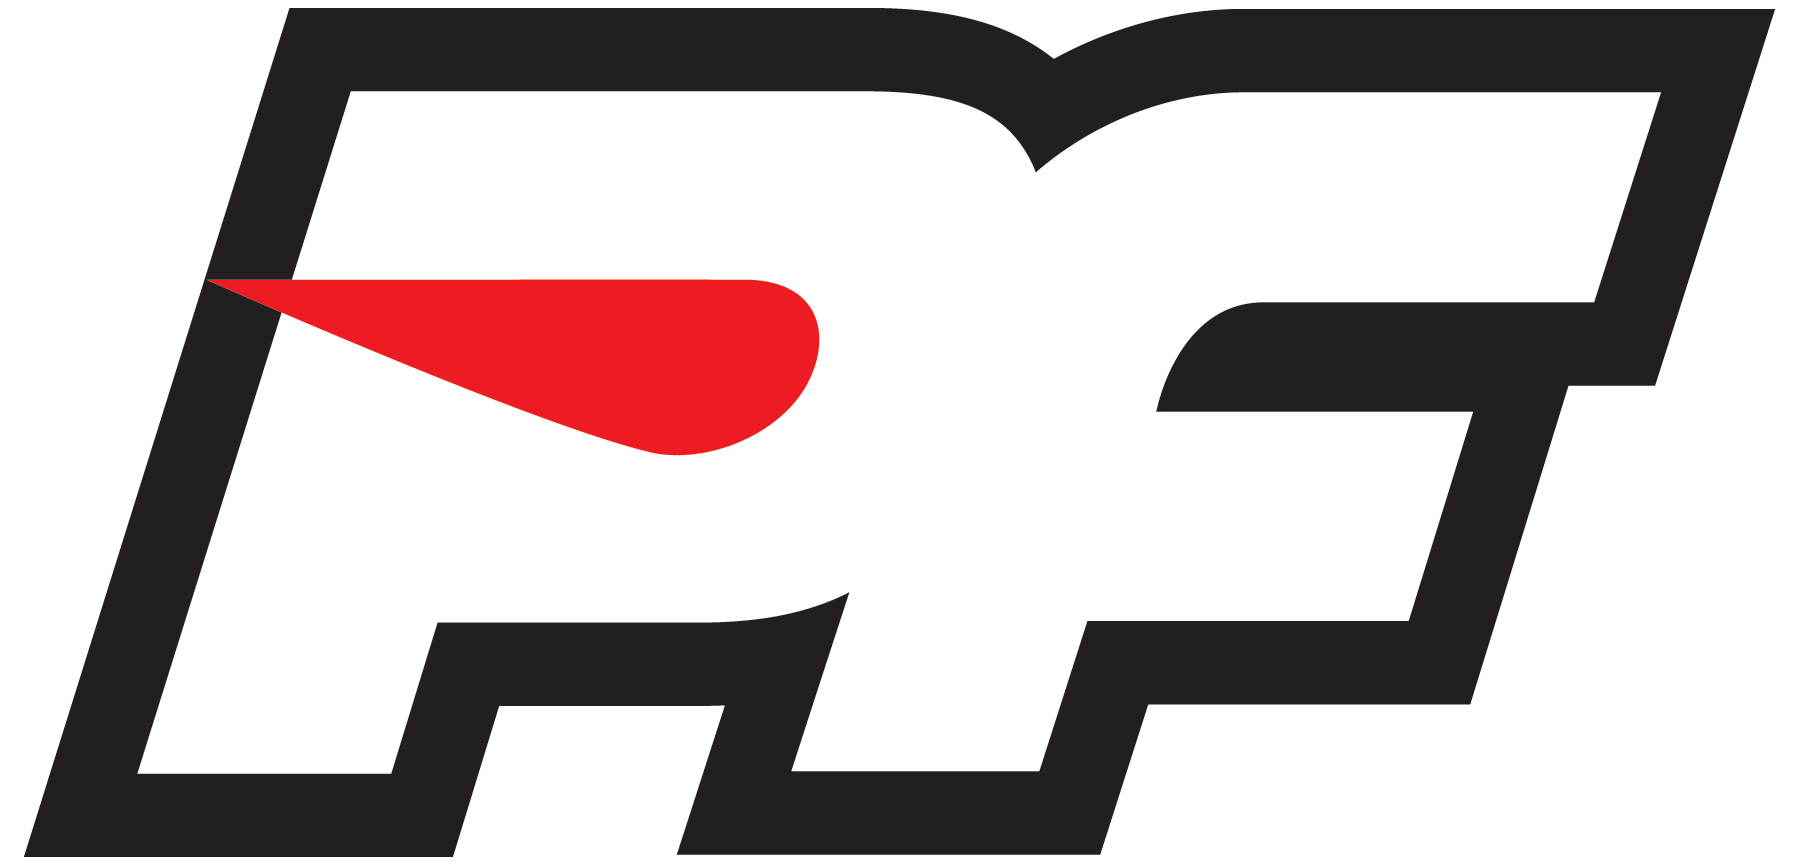 PF Logo - Race PF logo | Pro-Line Racing Logos | Pinterest | Logos and Racing